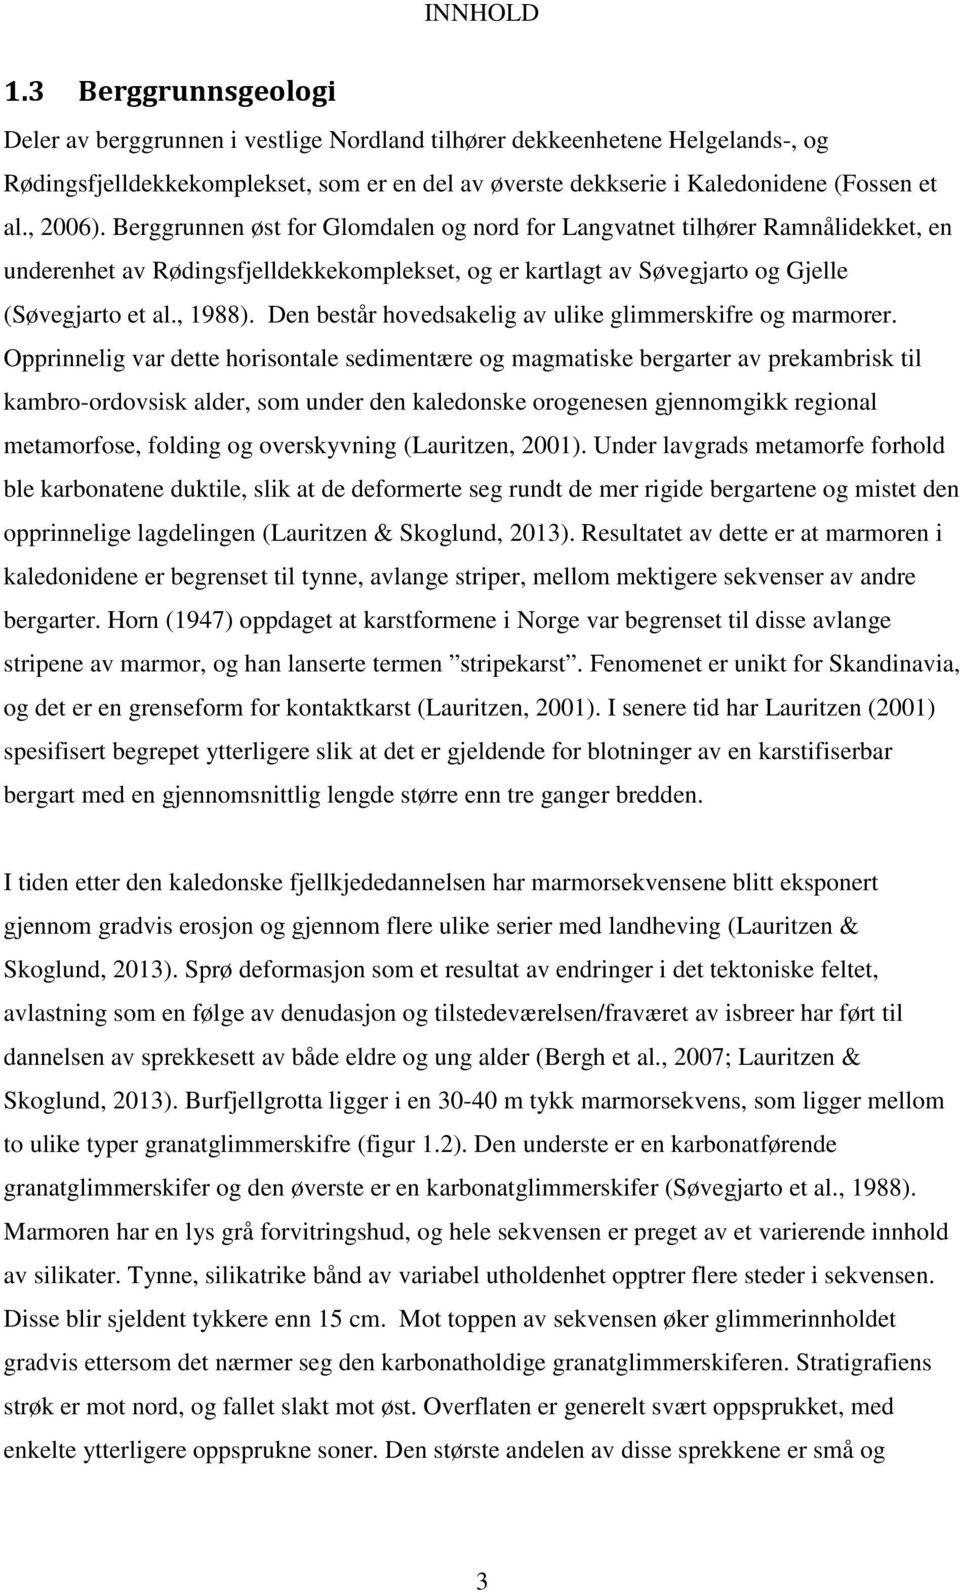 , 2006). Berggrunnen øst for Glomdalen og nord for Langvatnet tilhører Ramnålidekket, en underenhet av Rødingsfjelldekkekomplekset, og er kartlagt av Søvegjarto og Gjelle (Søvegjarto et al., 1988).